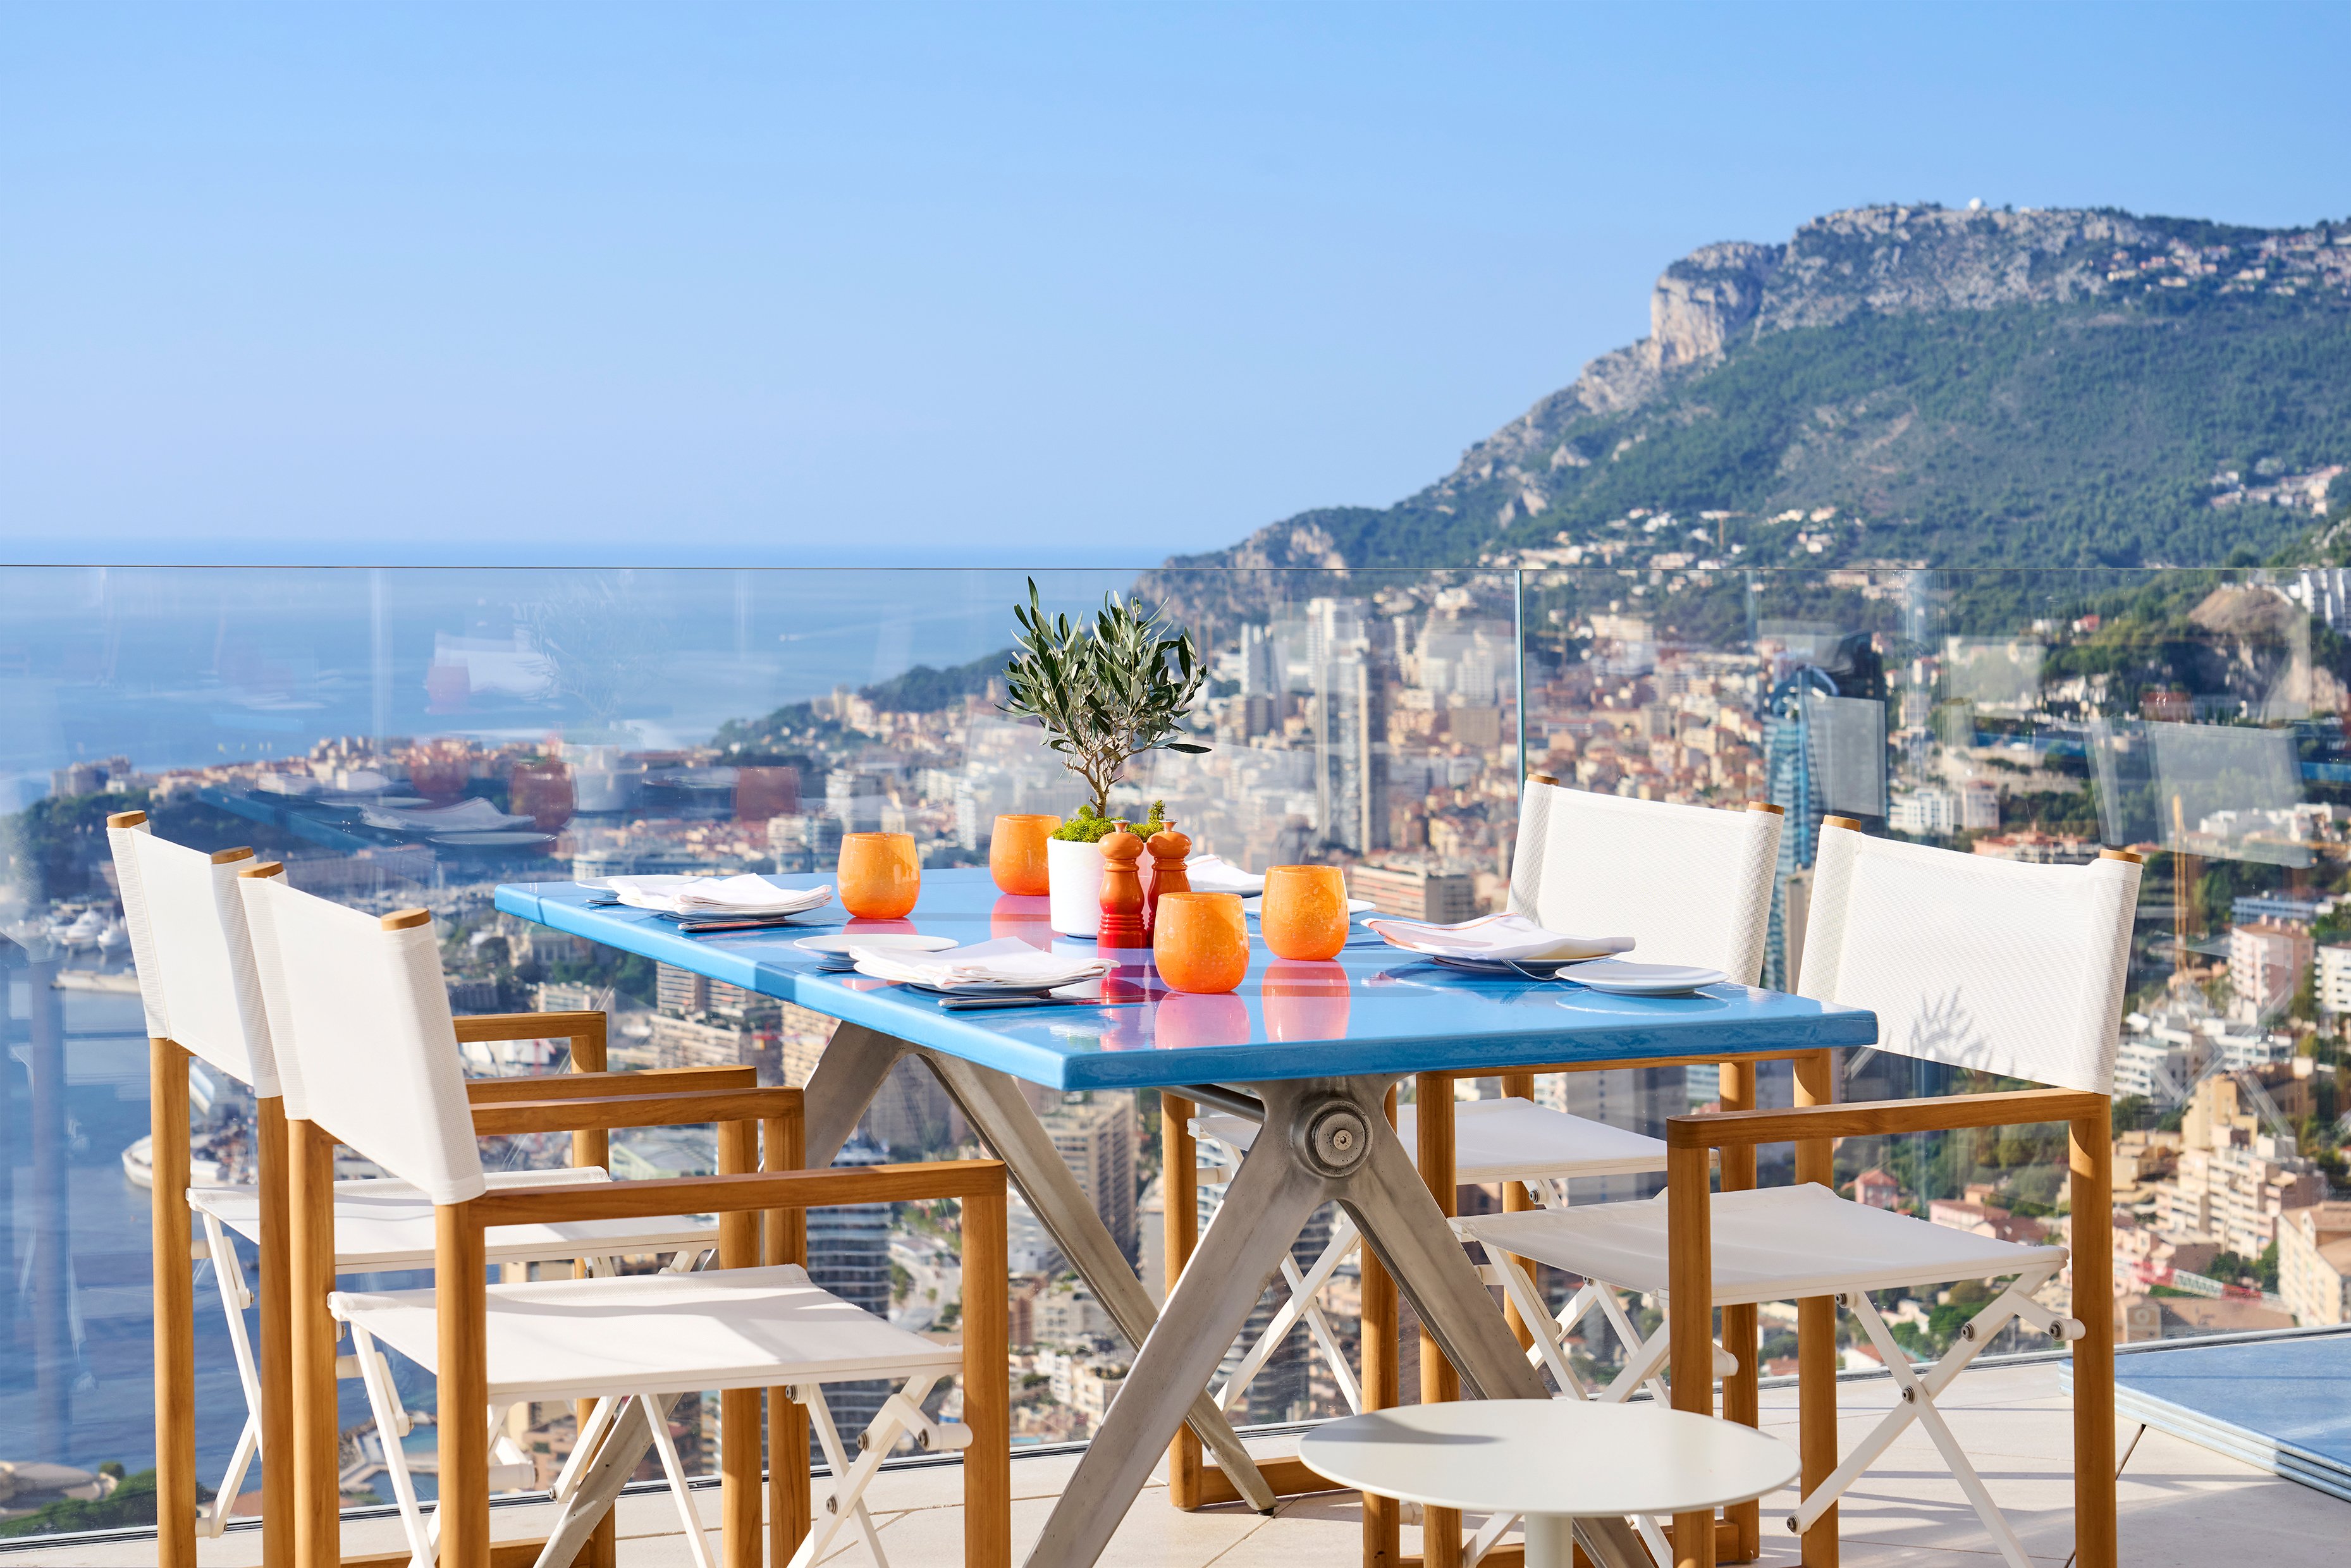 Table de restaurant surplombant Monaco - Restaurant table overlooking Monaco